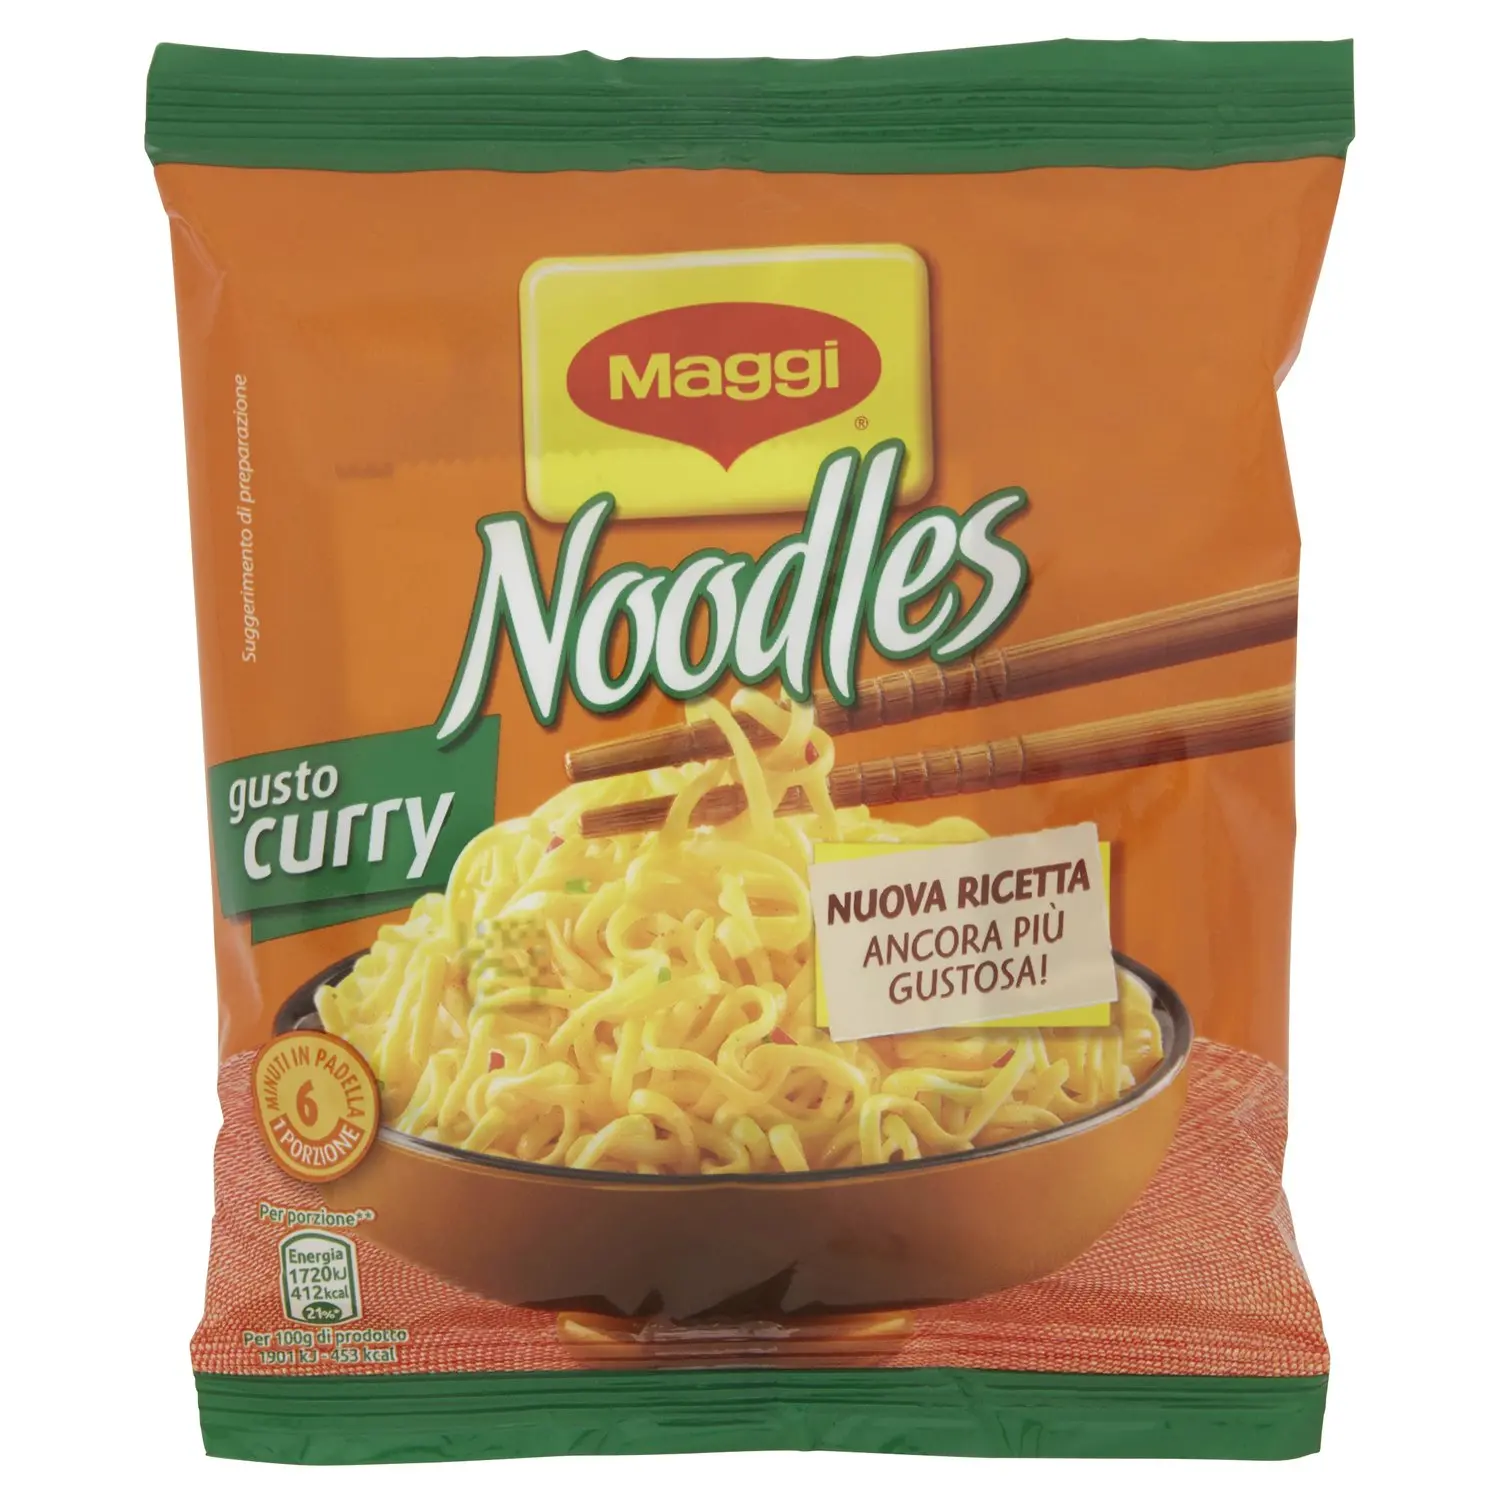 BUITONI IDEA PER NOODLES GUSTO CURRY Noodles istantanei e condimento al  gusto curry 1 porzione